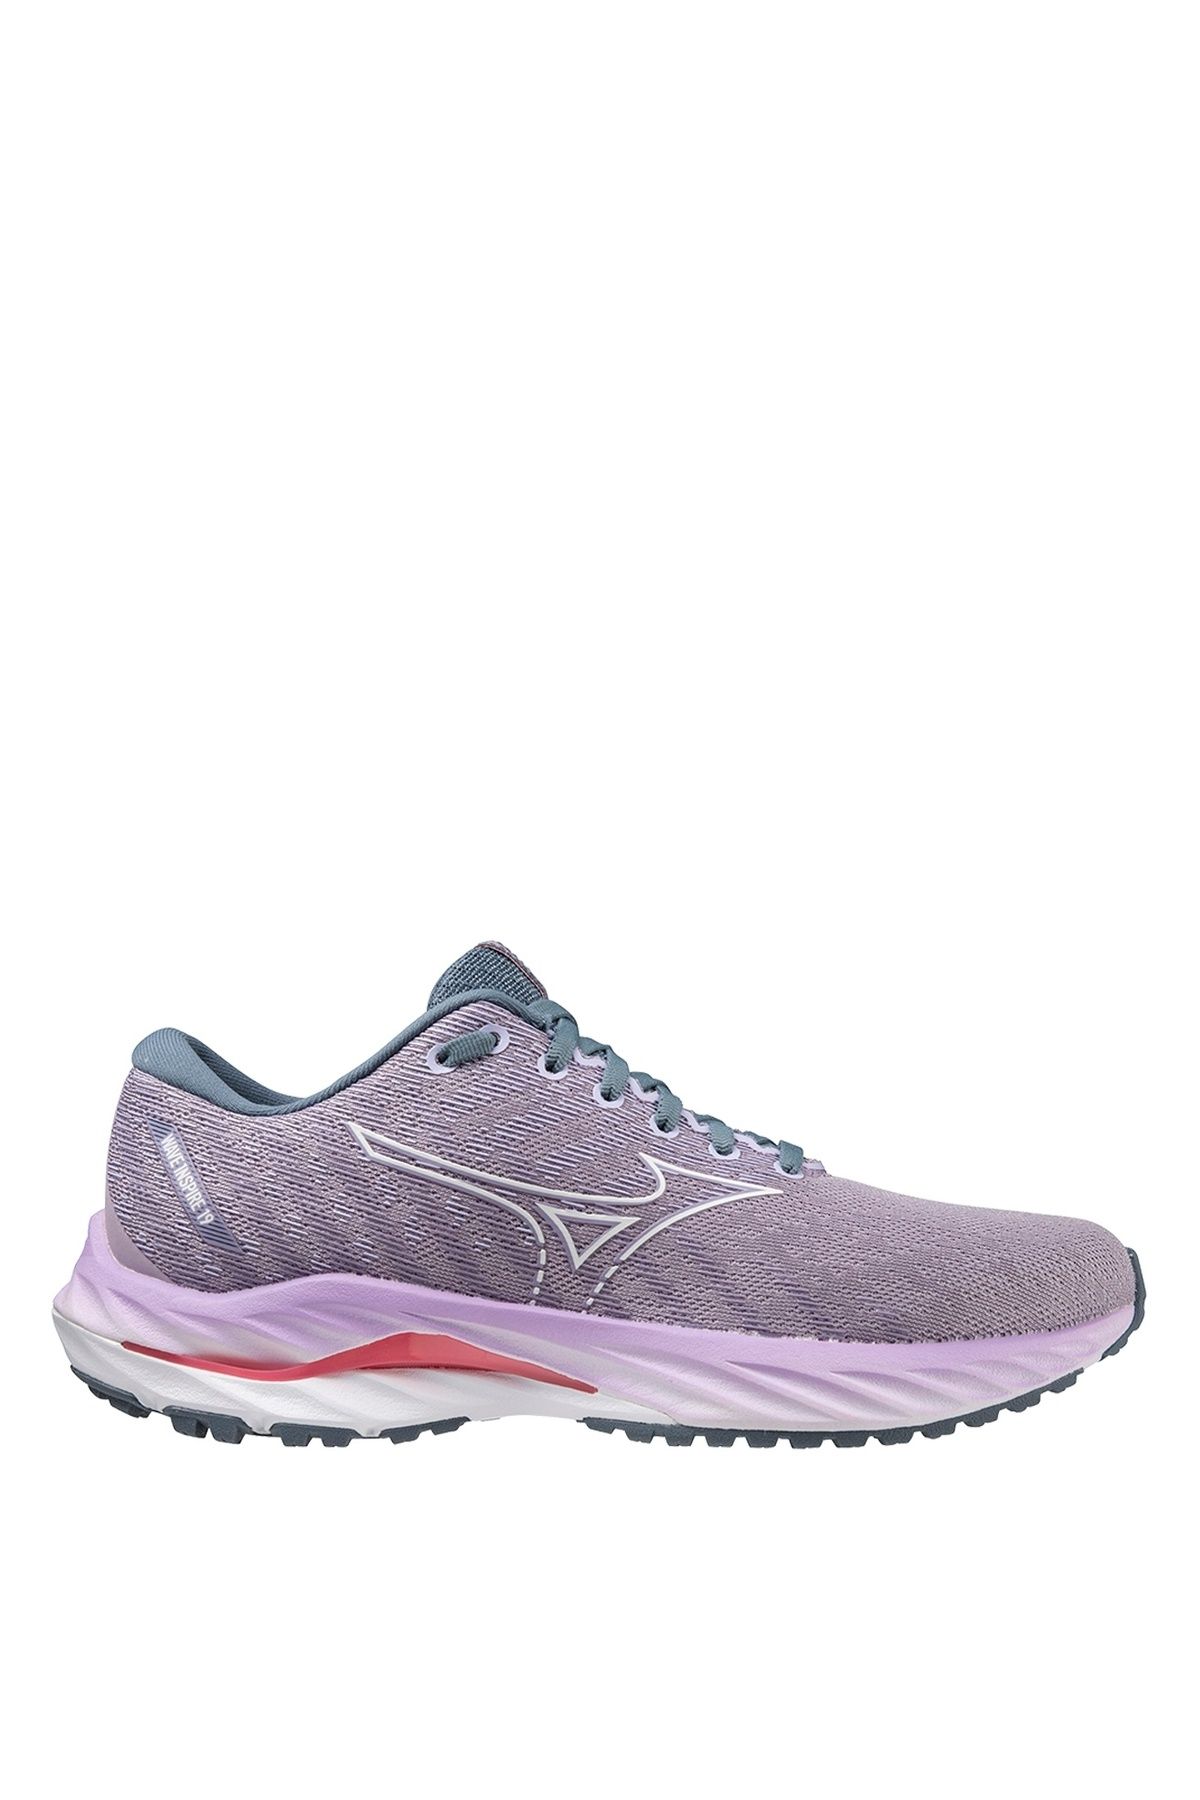 Mizuno Lila Kadın Koşu Ayakkabısı J1GD234425-Wave Inspire 19